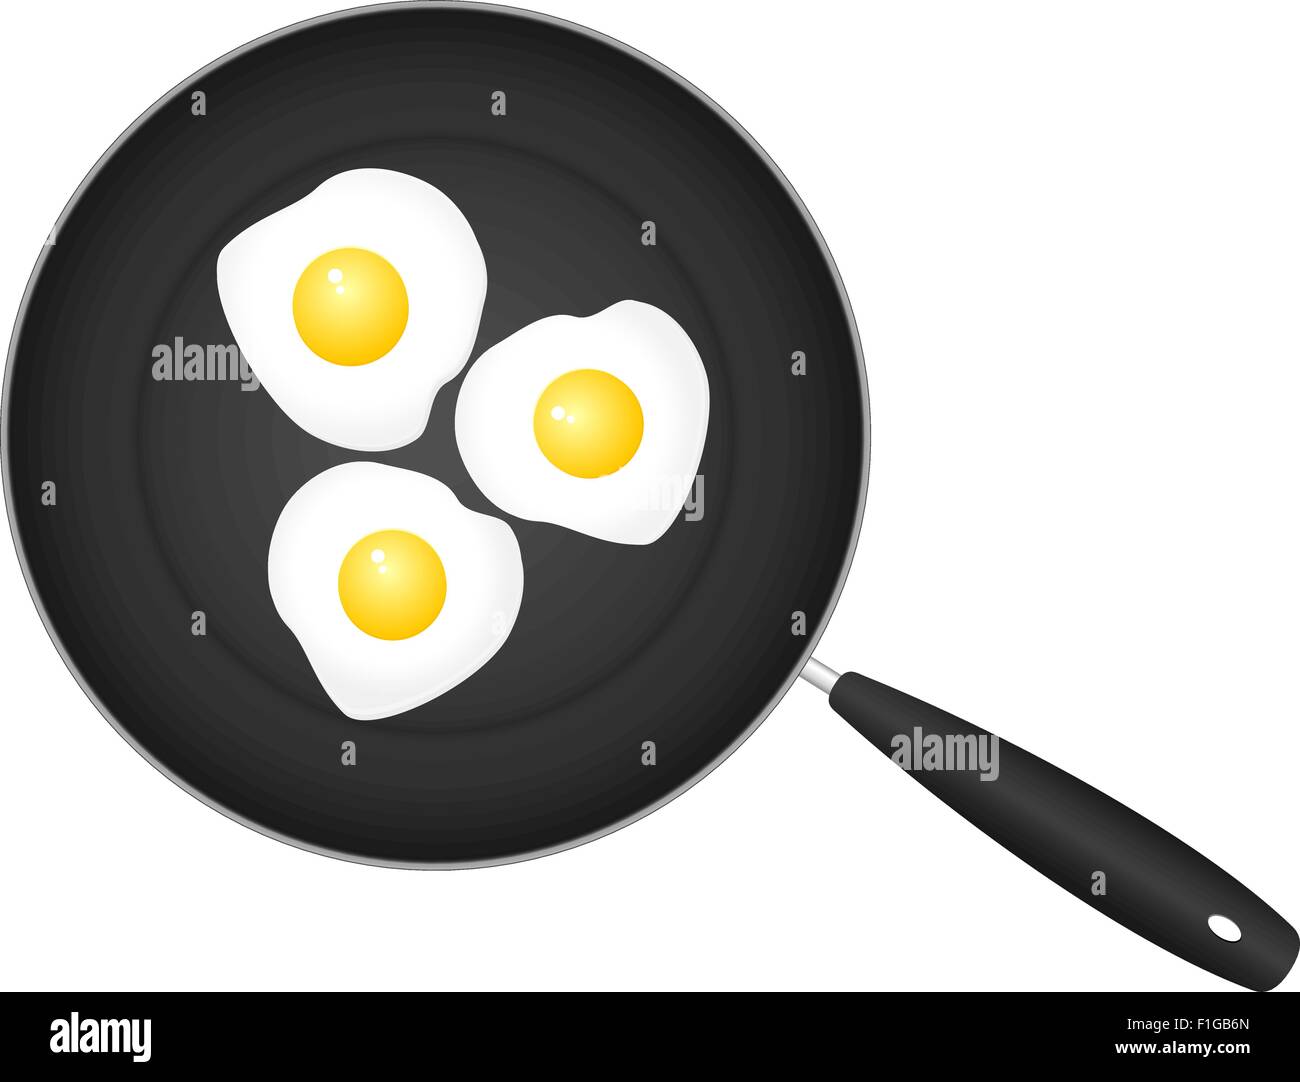 https://c8.alamy.com/compes/f1gb6n/sarten-con-huevos-sobre-un-fondo-blanco-ilustracion-vectorial-f1gb6n.jpg